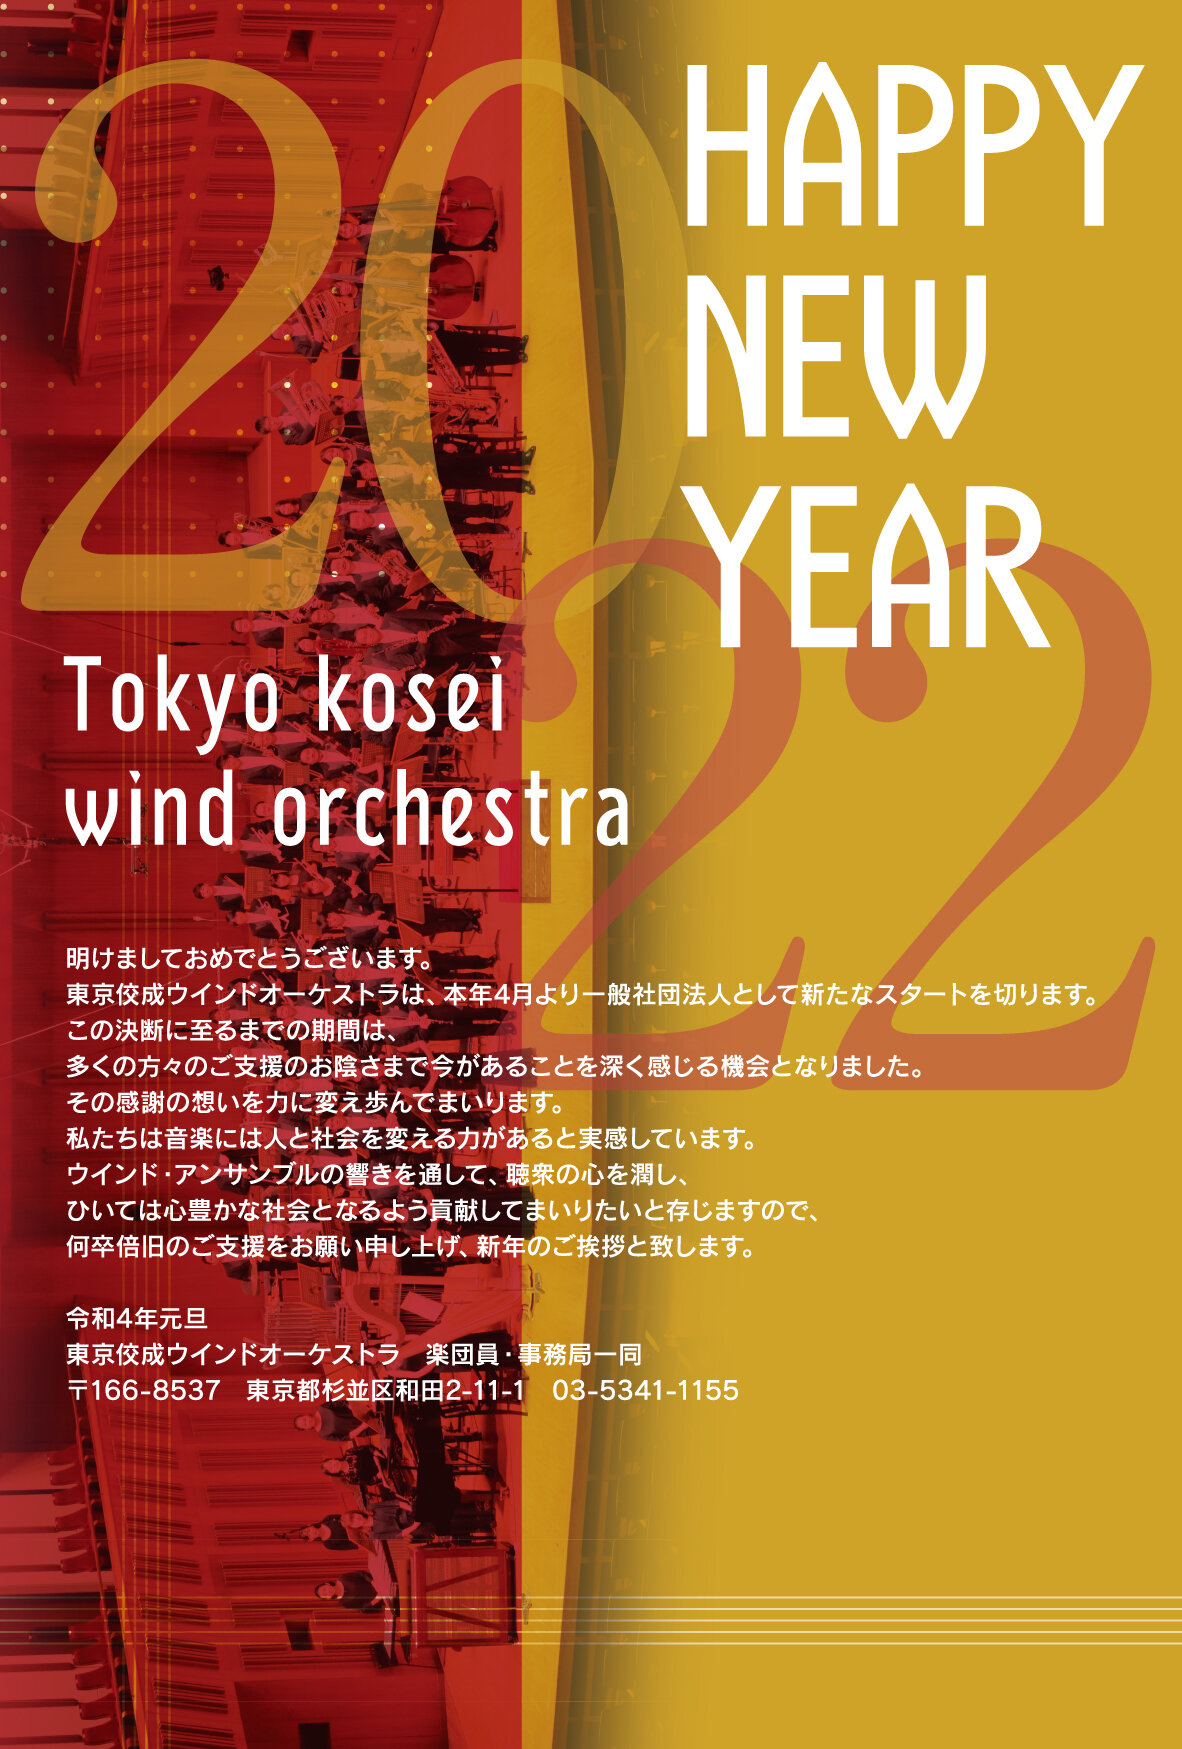 
東京構成ウインドオーケストラ
HAPPY NEW YEAR 2021
あけましておめでとうございます
削片は楽団創立60周年を記念し全国ツアーを開催いたしました
コロナ禍にあっても多くの方々が会場へ足を運んで頂き
楽団一同音楽を奏でることができる幸せをこれほどまでに感じたことはありません
今こそ音楽が求められるときと感じております
ウインド・アンサンブルの響きを多くの方へお届けすることを
模索してまいりたいと存じますので
何卒倍旧のご支援をお願い申し上げ
新たな歳のご挨拶といたします。
令和3年元旦
東京佼成ウインドオーケストラ
楽団員・事務局一同